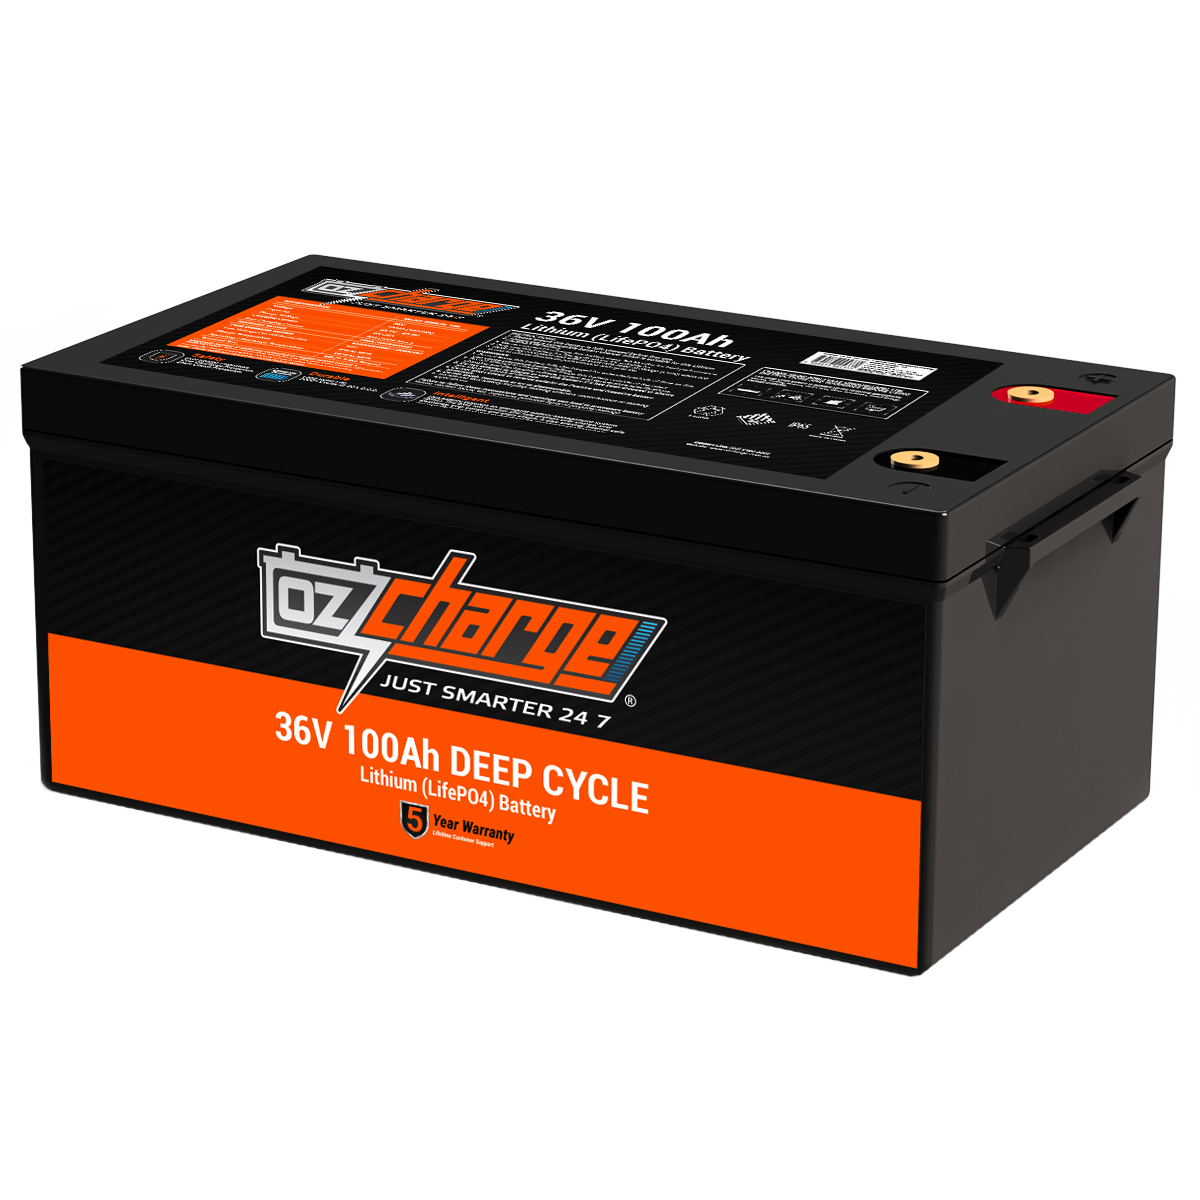 36V 100Ah Lithium LifePO4 Deep Cycle Battery